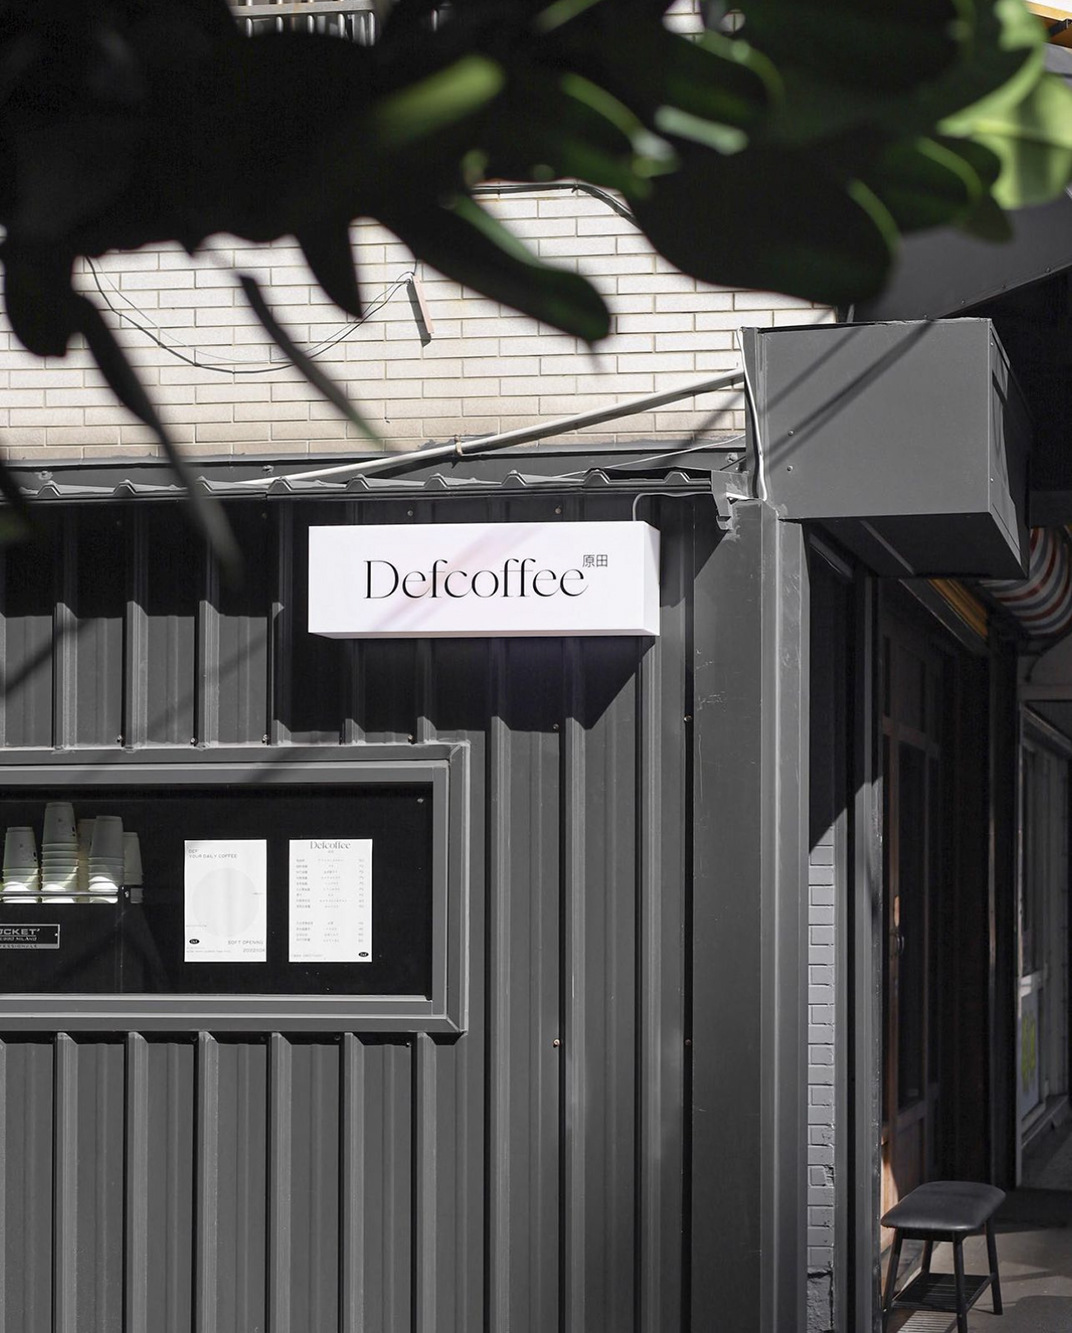 复古咖啡店Defcoffee 台湾 北京 上海 成都 武汉 杭州 广州 香港 澳门 logo设计 vi设计 空间设计